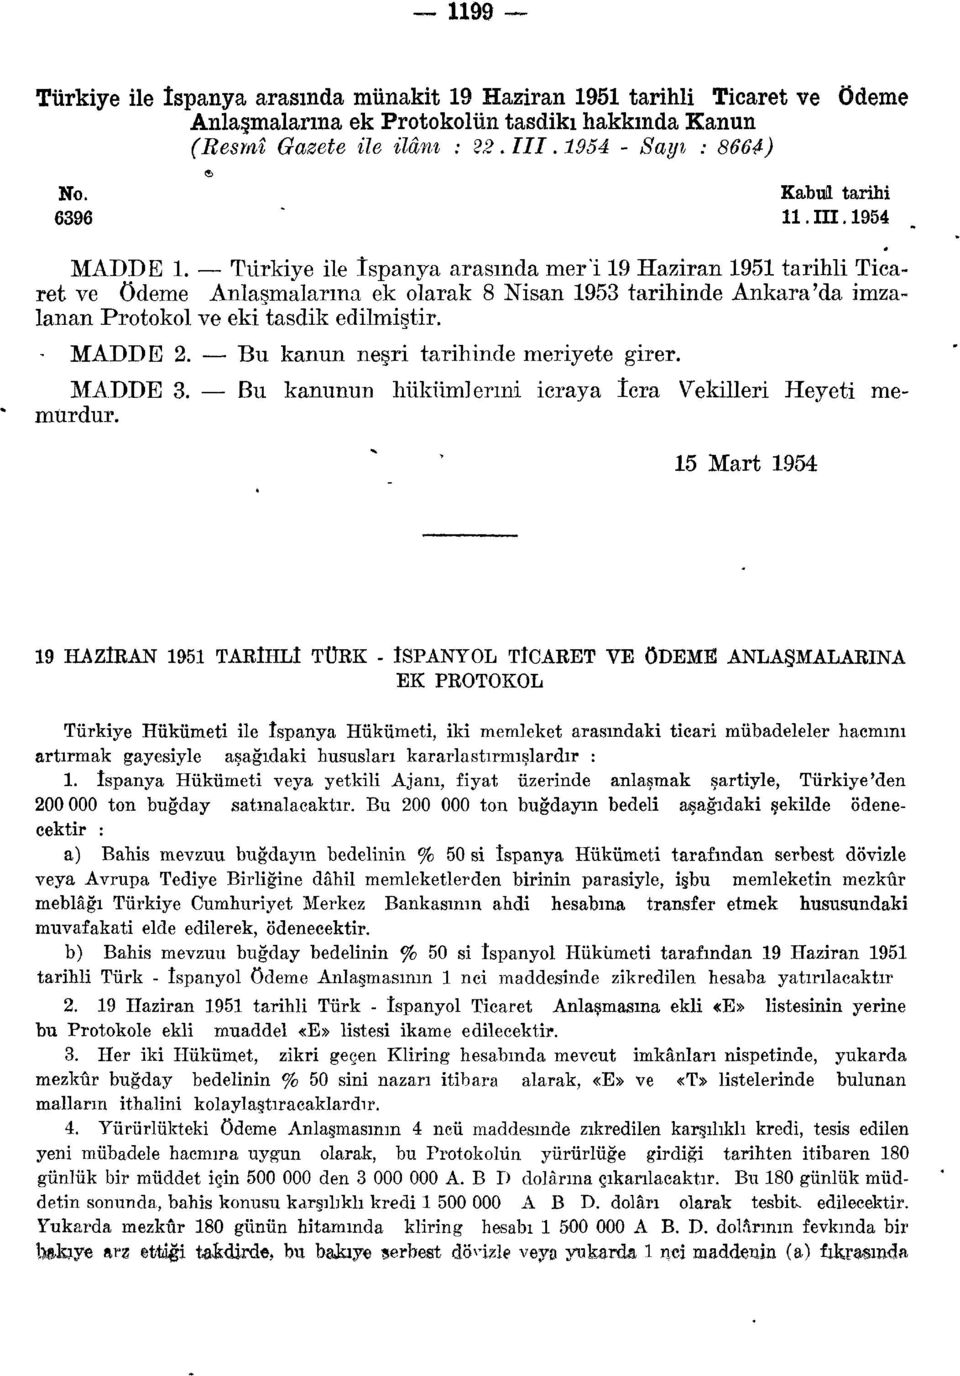 Türkiye ile İspanya arasında mer'i 19 Haziran 1951 tarihli Ticaret ve ödeme Anlaşmalarına ek olarak 8 Nisan 1953 tarihinde Ankara'da imzalanan Protokol ve eki tasdik edilmiştir. - MADDE 2.